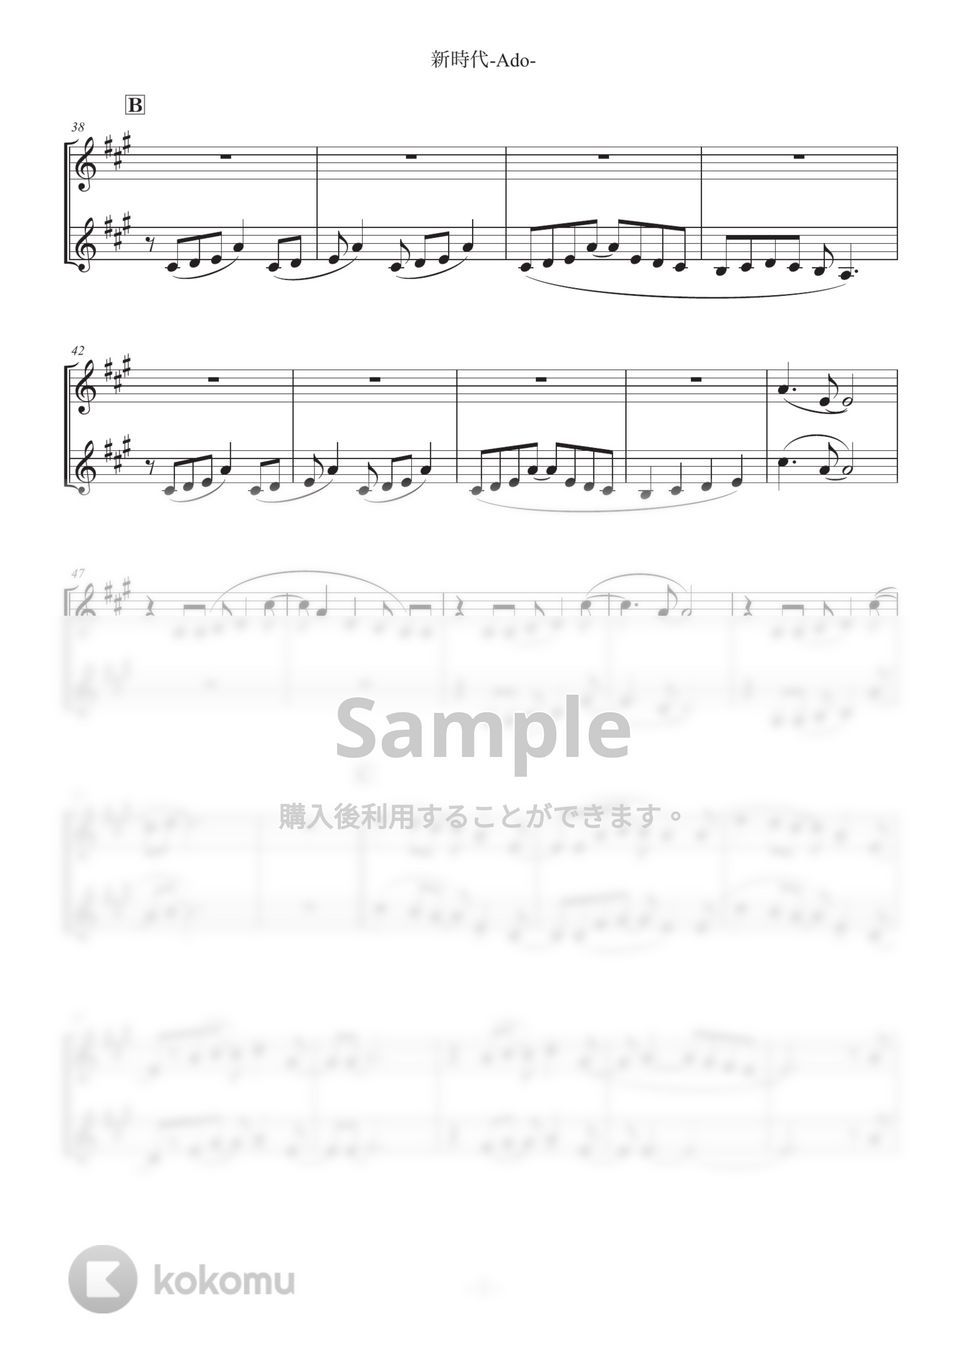 ワンピース - 新時代 (クラリネット二重奏) by SHUN&NANA Daily Clarinets!